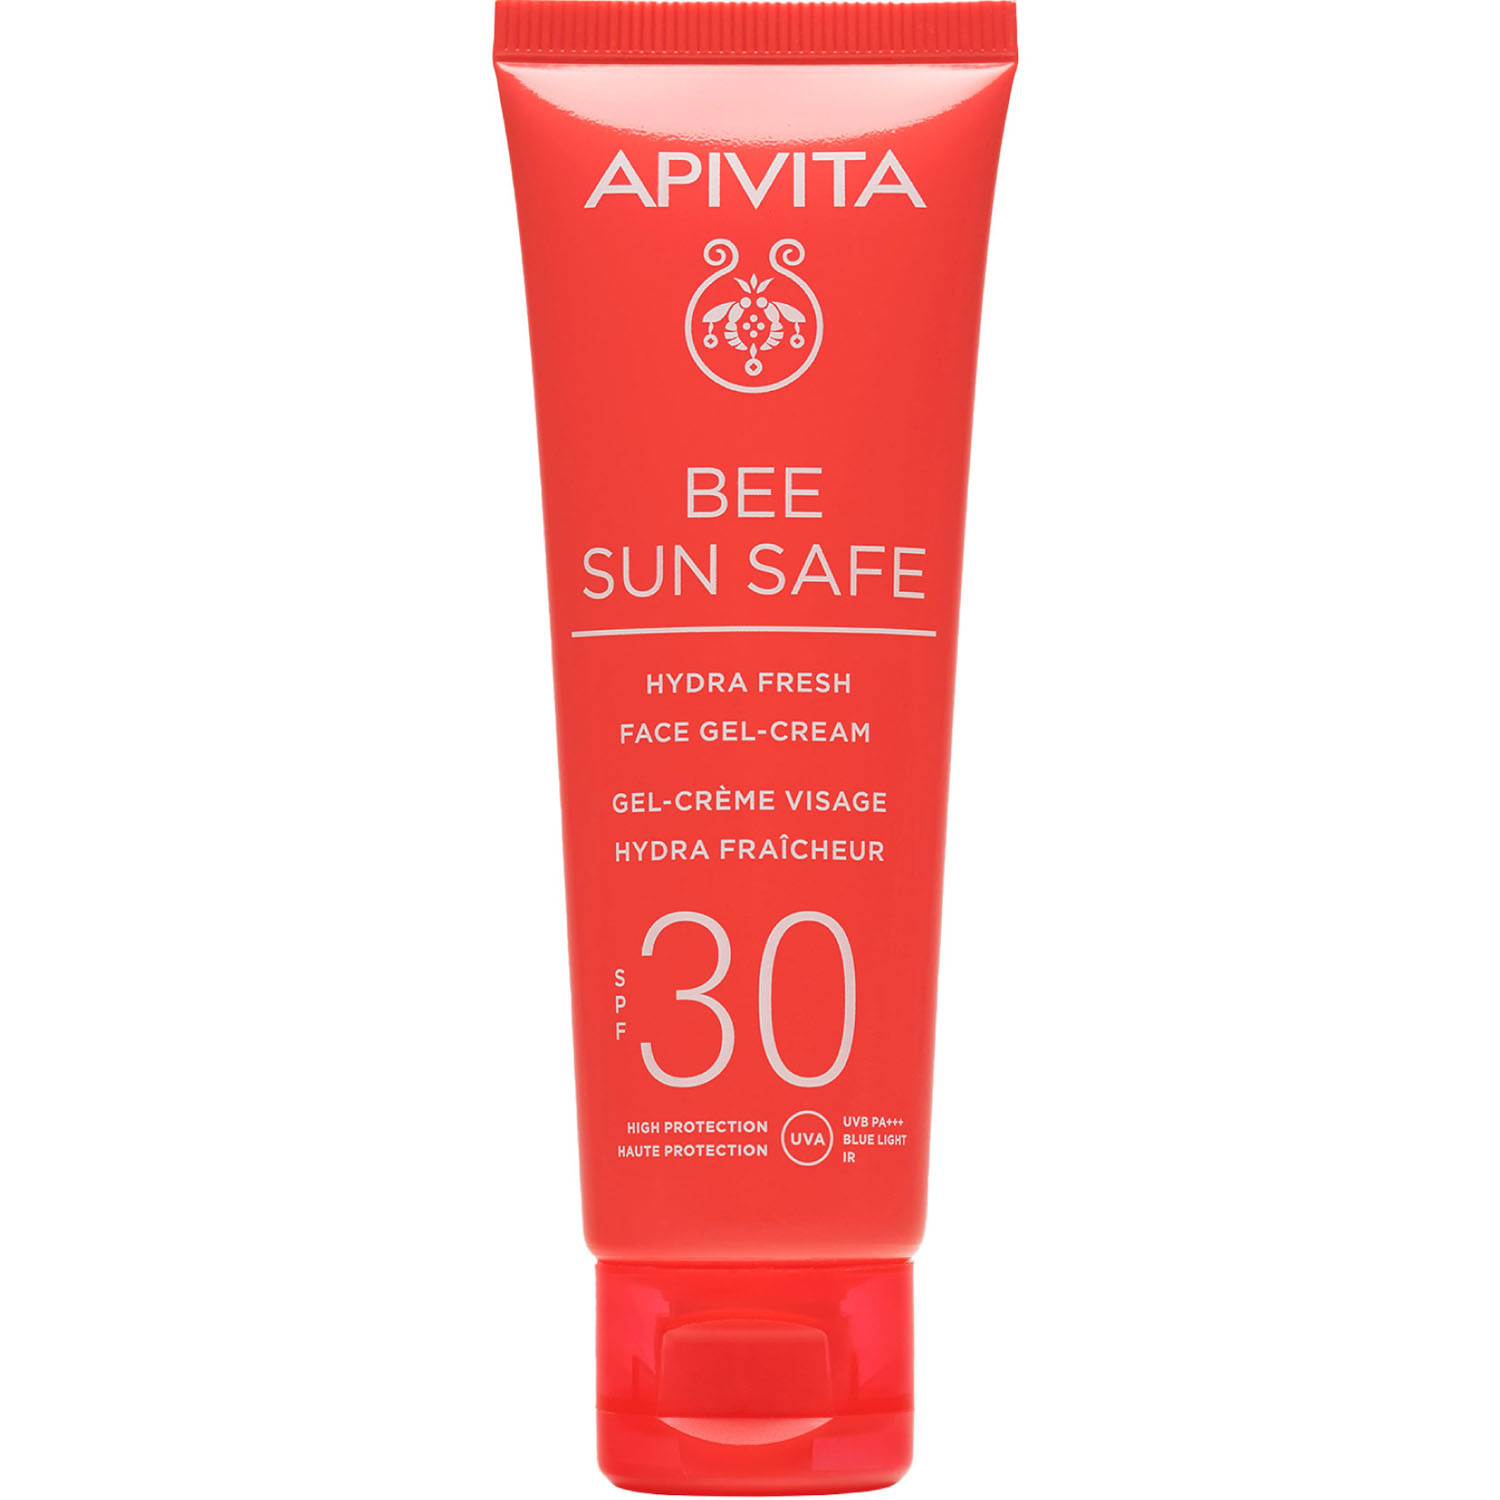 Apivita Солнцезащитный свежий увлажняющий гель-крем для лица SPF 30, 50 мл (Apivita, Bee Sun Safe)